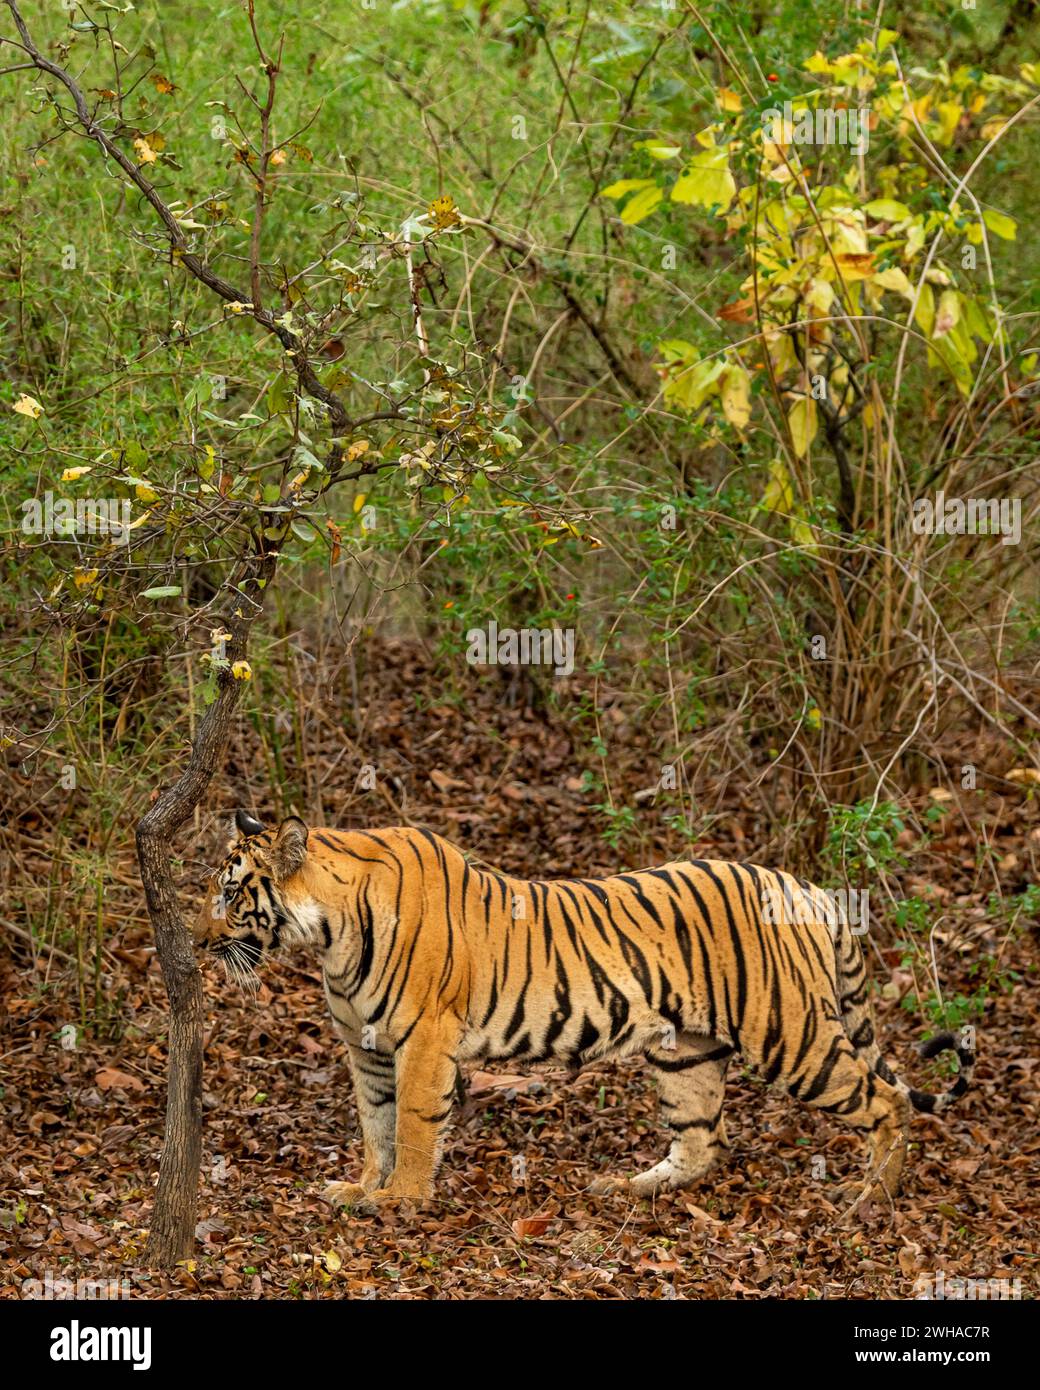 tigre selvatica del bengala o tigre di panthera o tigre in un verde foresta di bambù naturale nella zona cuscinetto safari del parco nazionale bandhavgarh Foto Stock